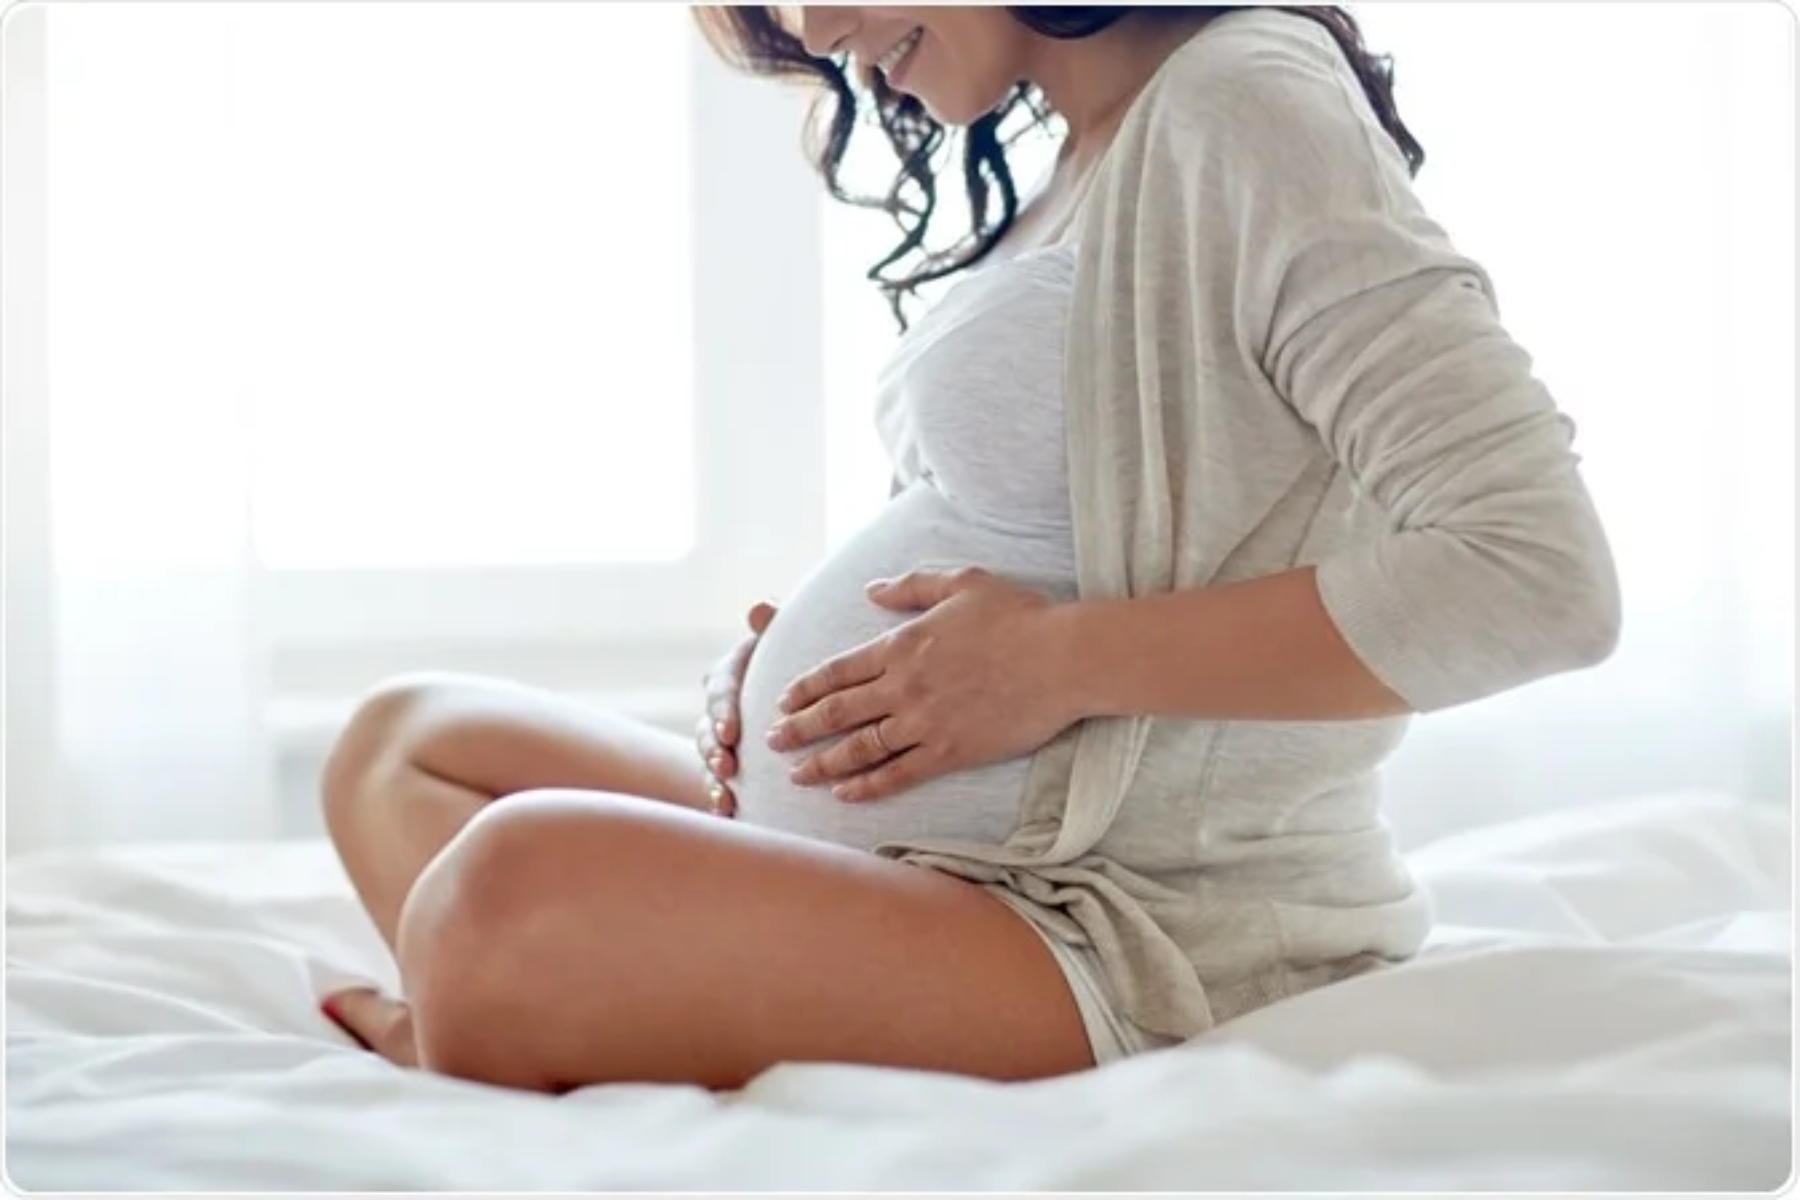 Εγκυμοσύνη: Ποια η επίδραση στην εγκεφαλική δραστηριότητα σε κατάσταση ηρεμίας;